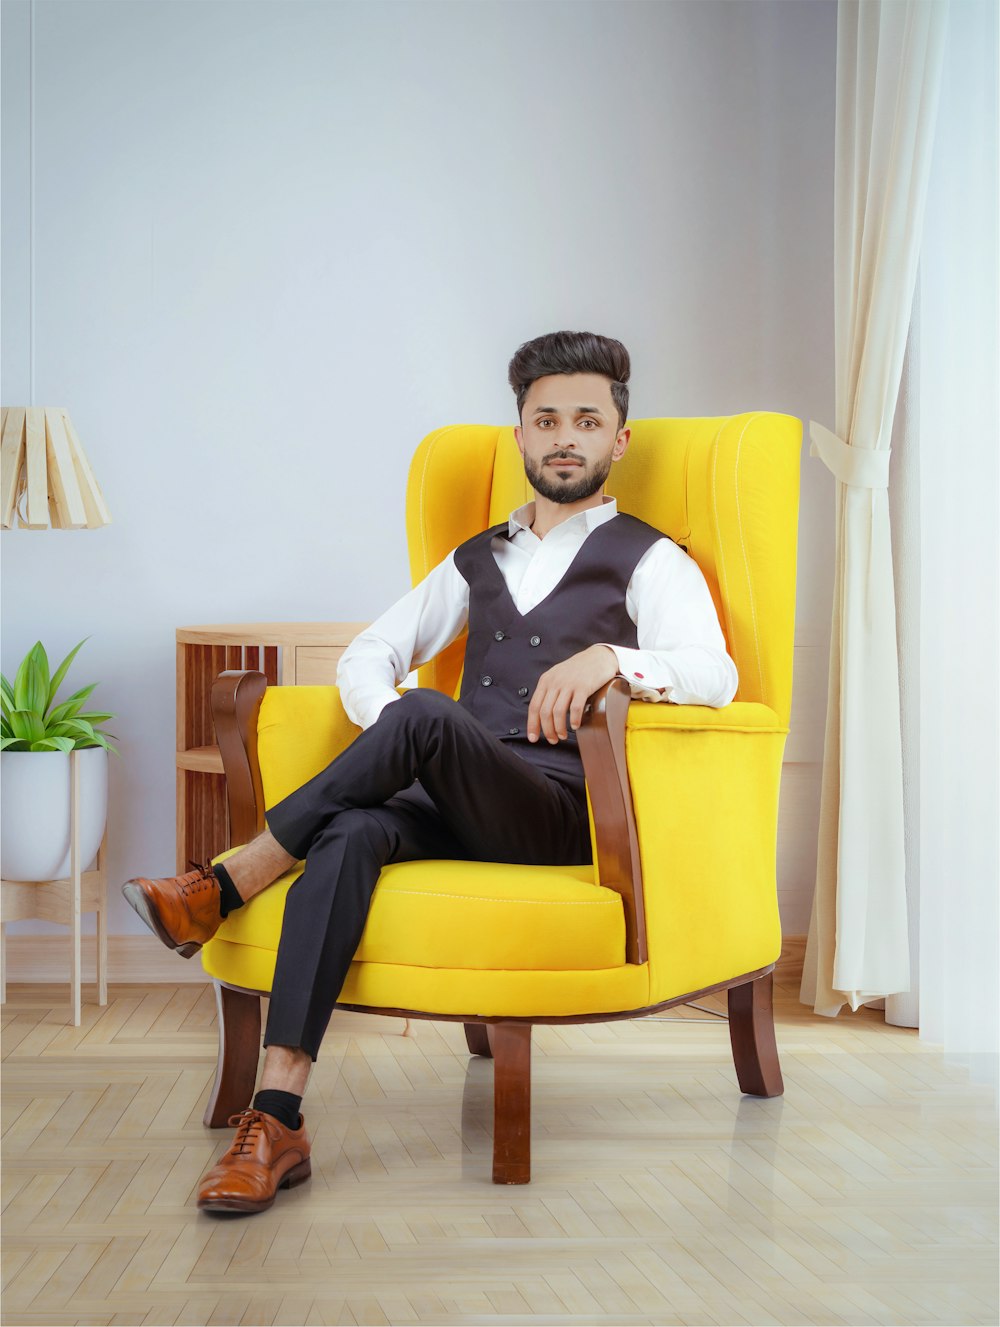 Ein Mann sitzt in einem gelben Stuhl in einem Raum